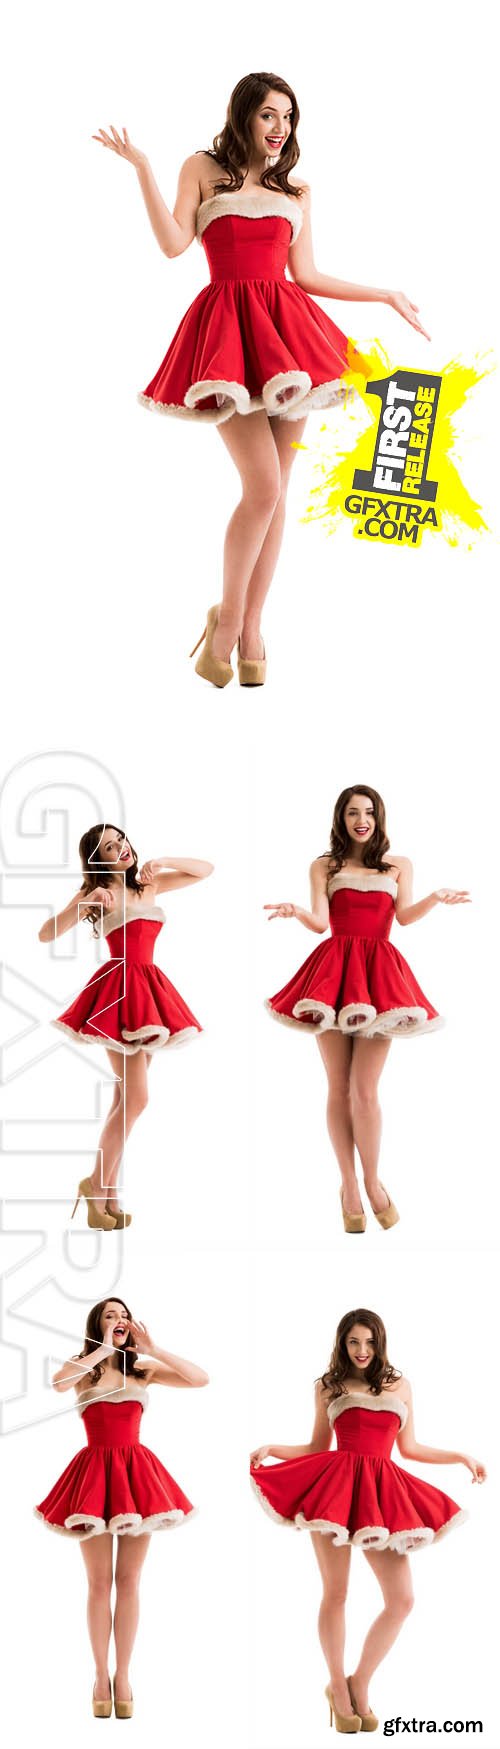 Stock Photos - Sexy Girl Wearing Santa Claus Clothes